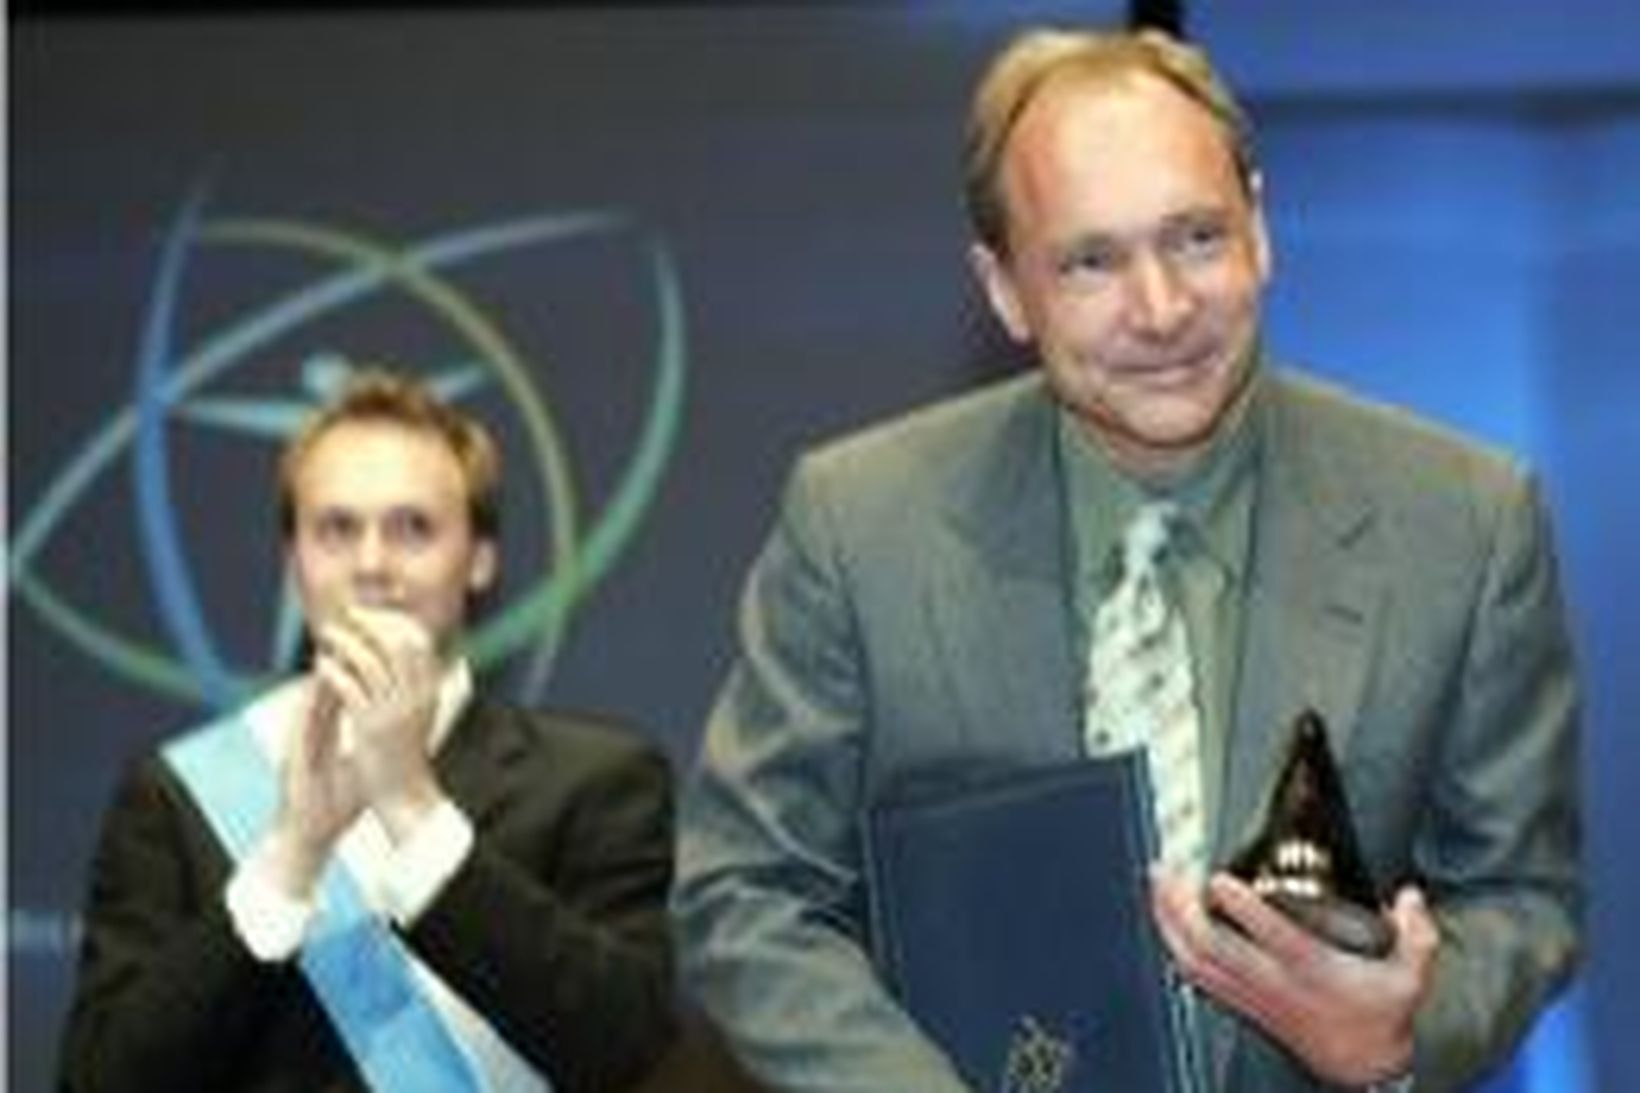 Sir Tim Berners-Lee.